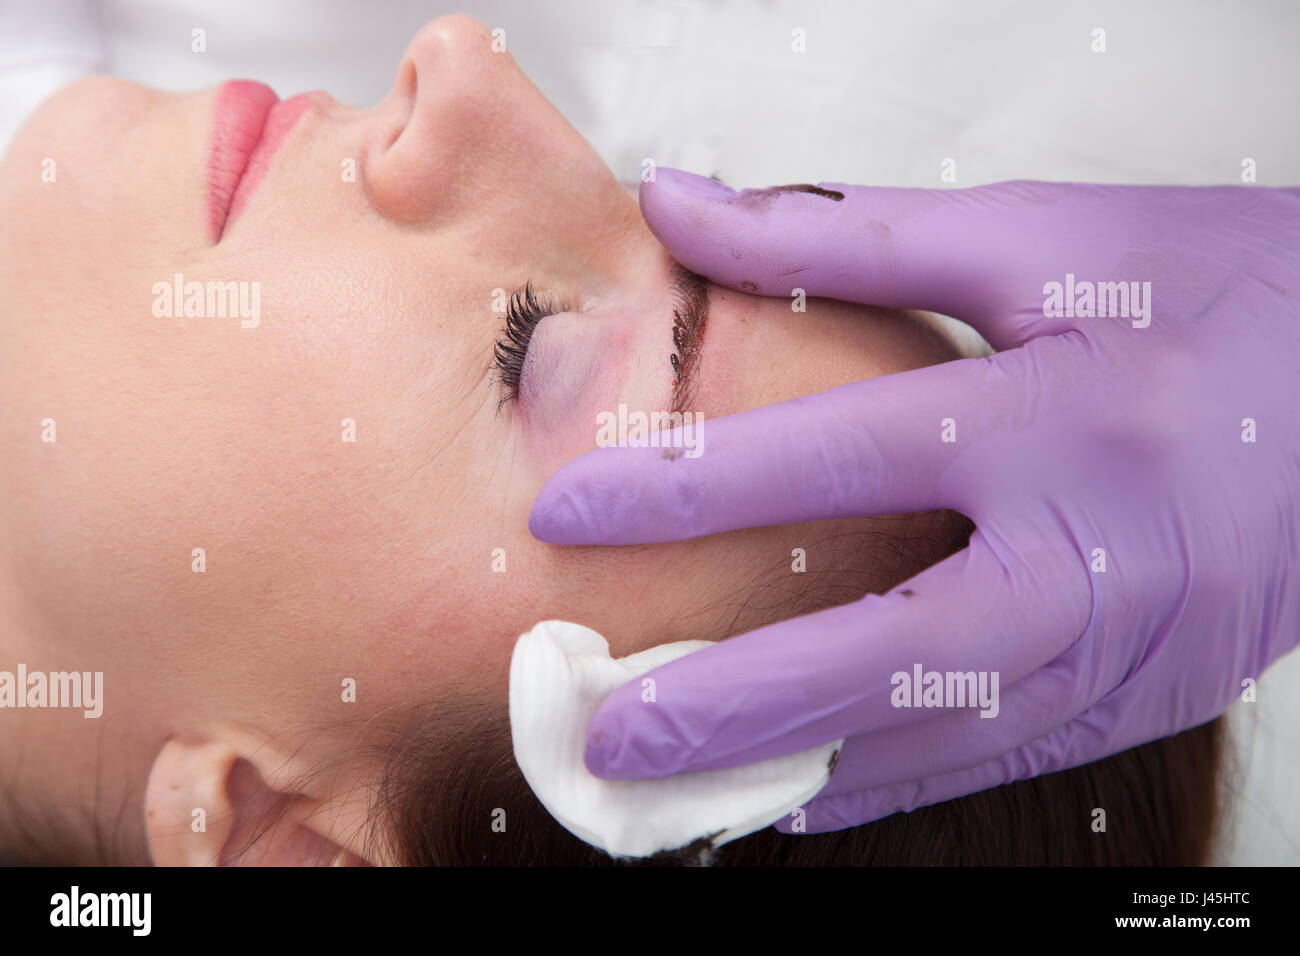 Cosmetologo applicare trucco permanente sulle sopracciglia Foto Stock